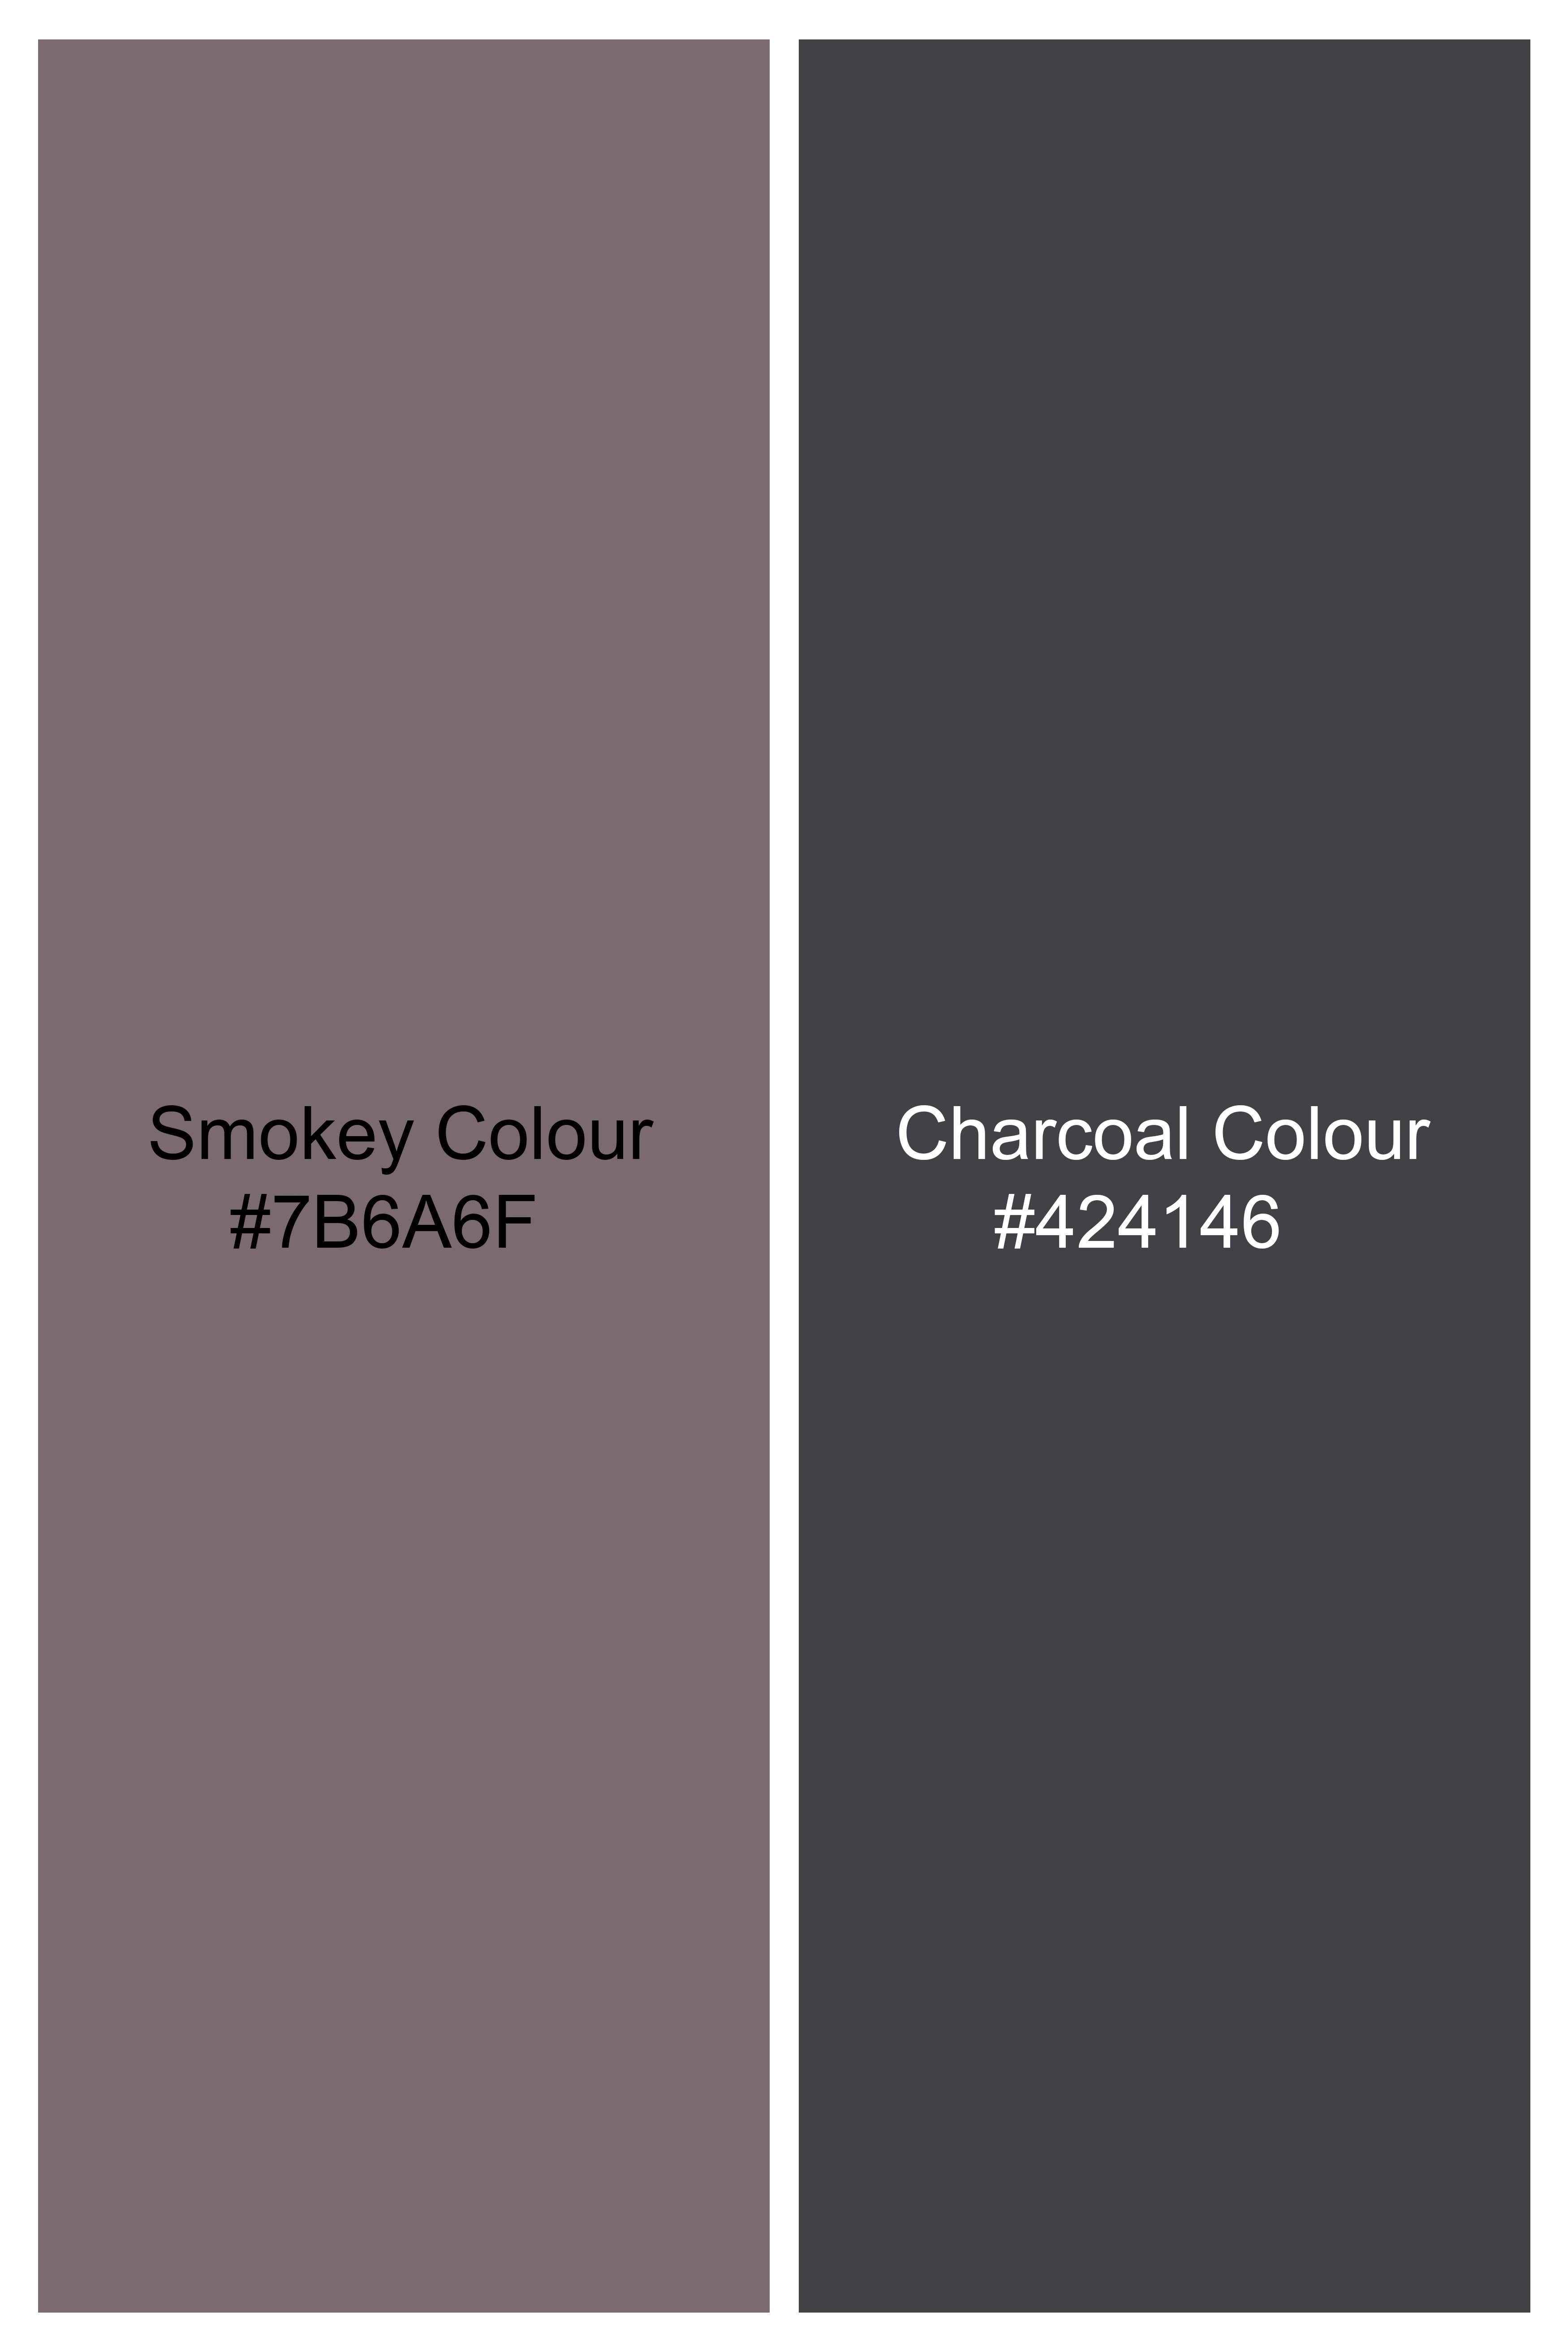 Smokey Gray and Charcoal Gray Camouflage Cargo Denim J248-30, J248-32, J248-34, J248-36, J248-38, J248-40